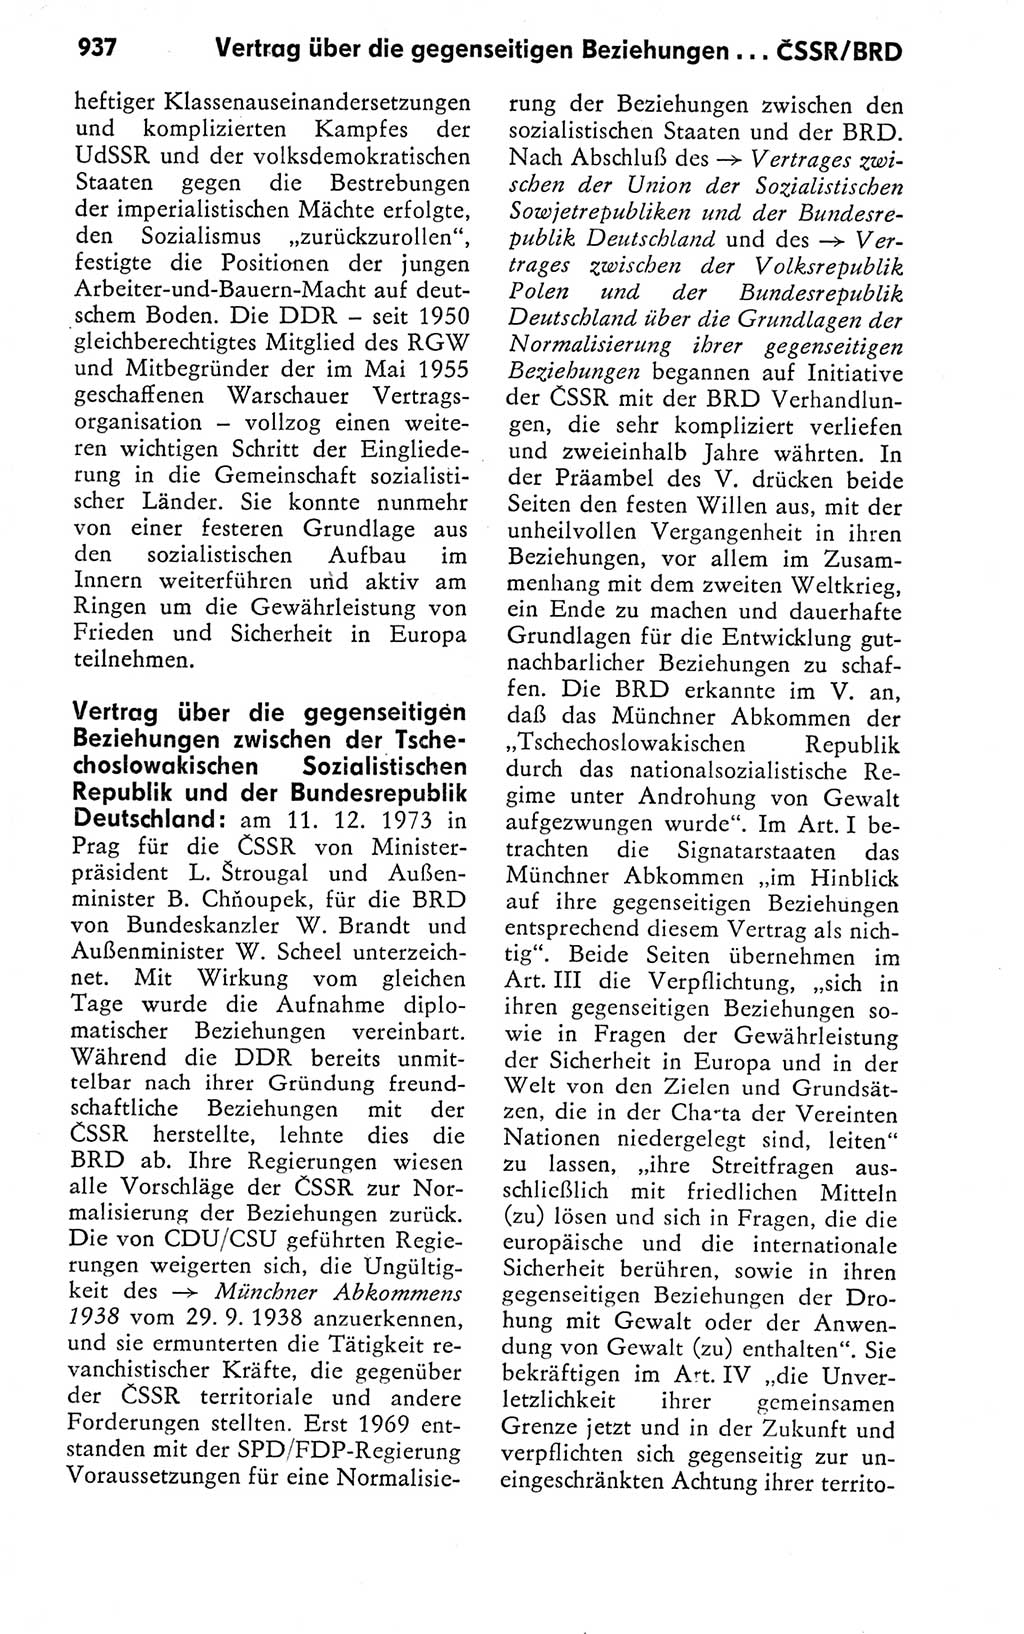 Kleines politisches Wörterbuch [Deutsche Demokratische Republik (DDR)] 1978, Seite 937 (Kl. pol. Wb. DDR 1978, S. 937)